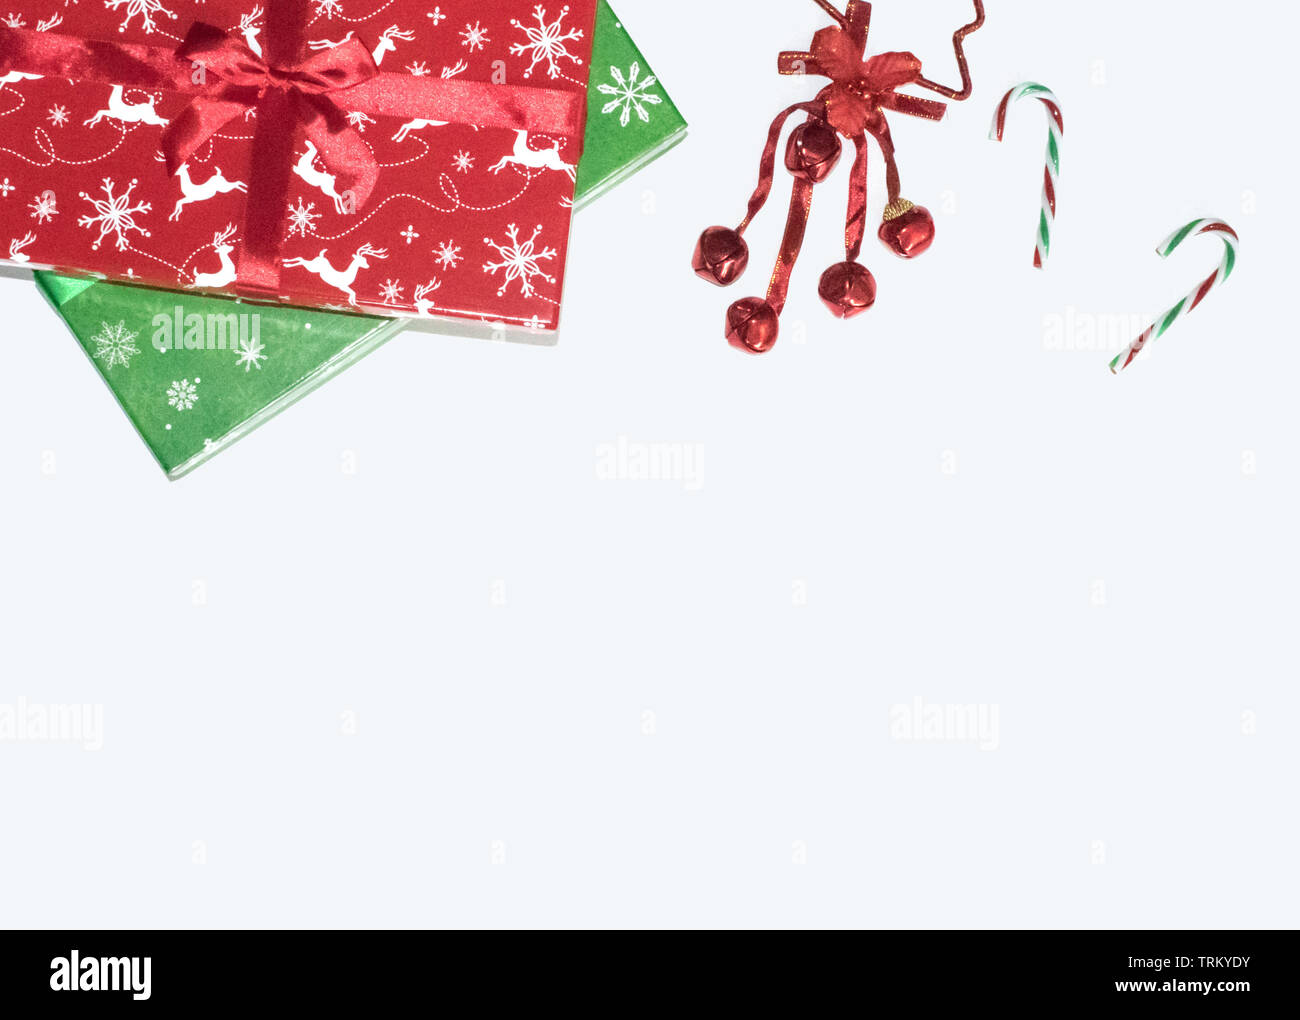 Caja de regalo de Navidad se presenta con decoraciones sobre fondo blanco, laicos plana vista superior, adornos de Navidad, rojo, verde y bastones de caramelo y campanas composición Foto de stock